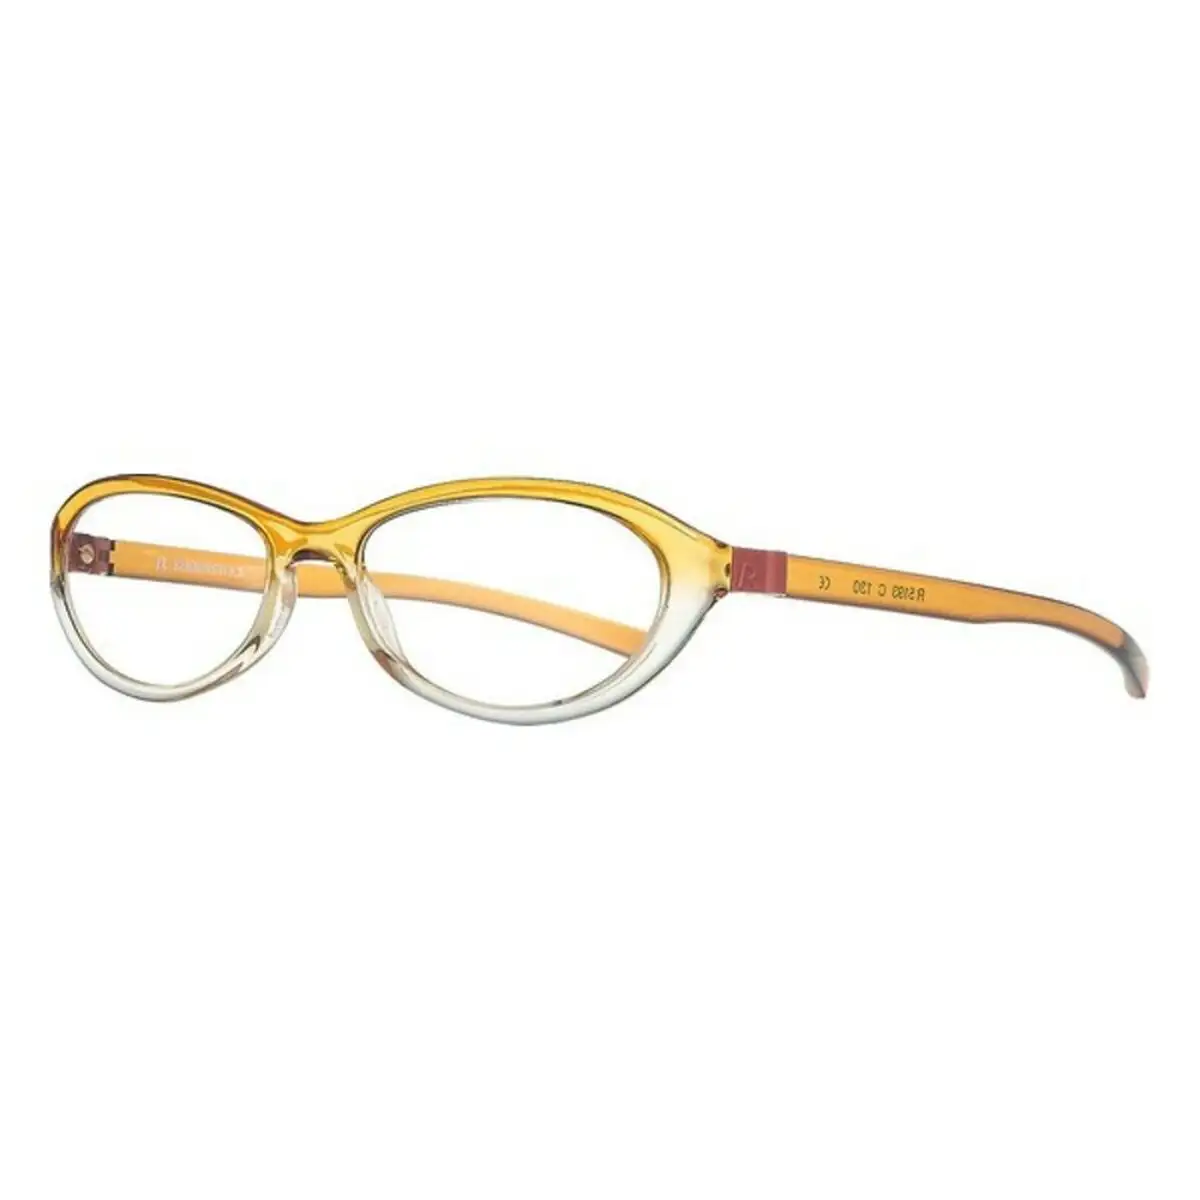 Monture de lunettes femme rodenstock r5193 c orange o 50 mm _8272. DIAYTAR SENEGAL - Votre Plateforme Shopping de Confiance. Naviguez à travers nos rayons et choisissez des produits fiables qui répondent à vos besoins quotidiens.